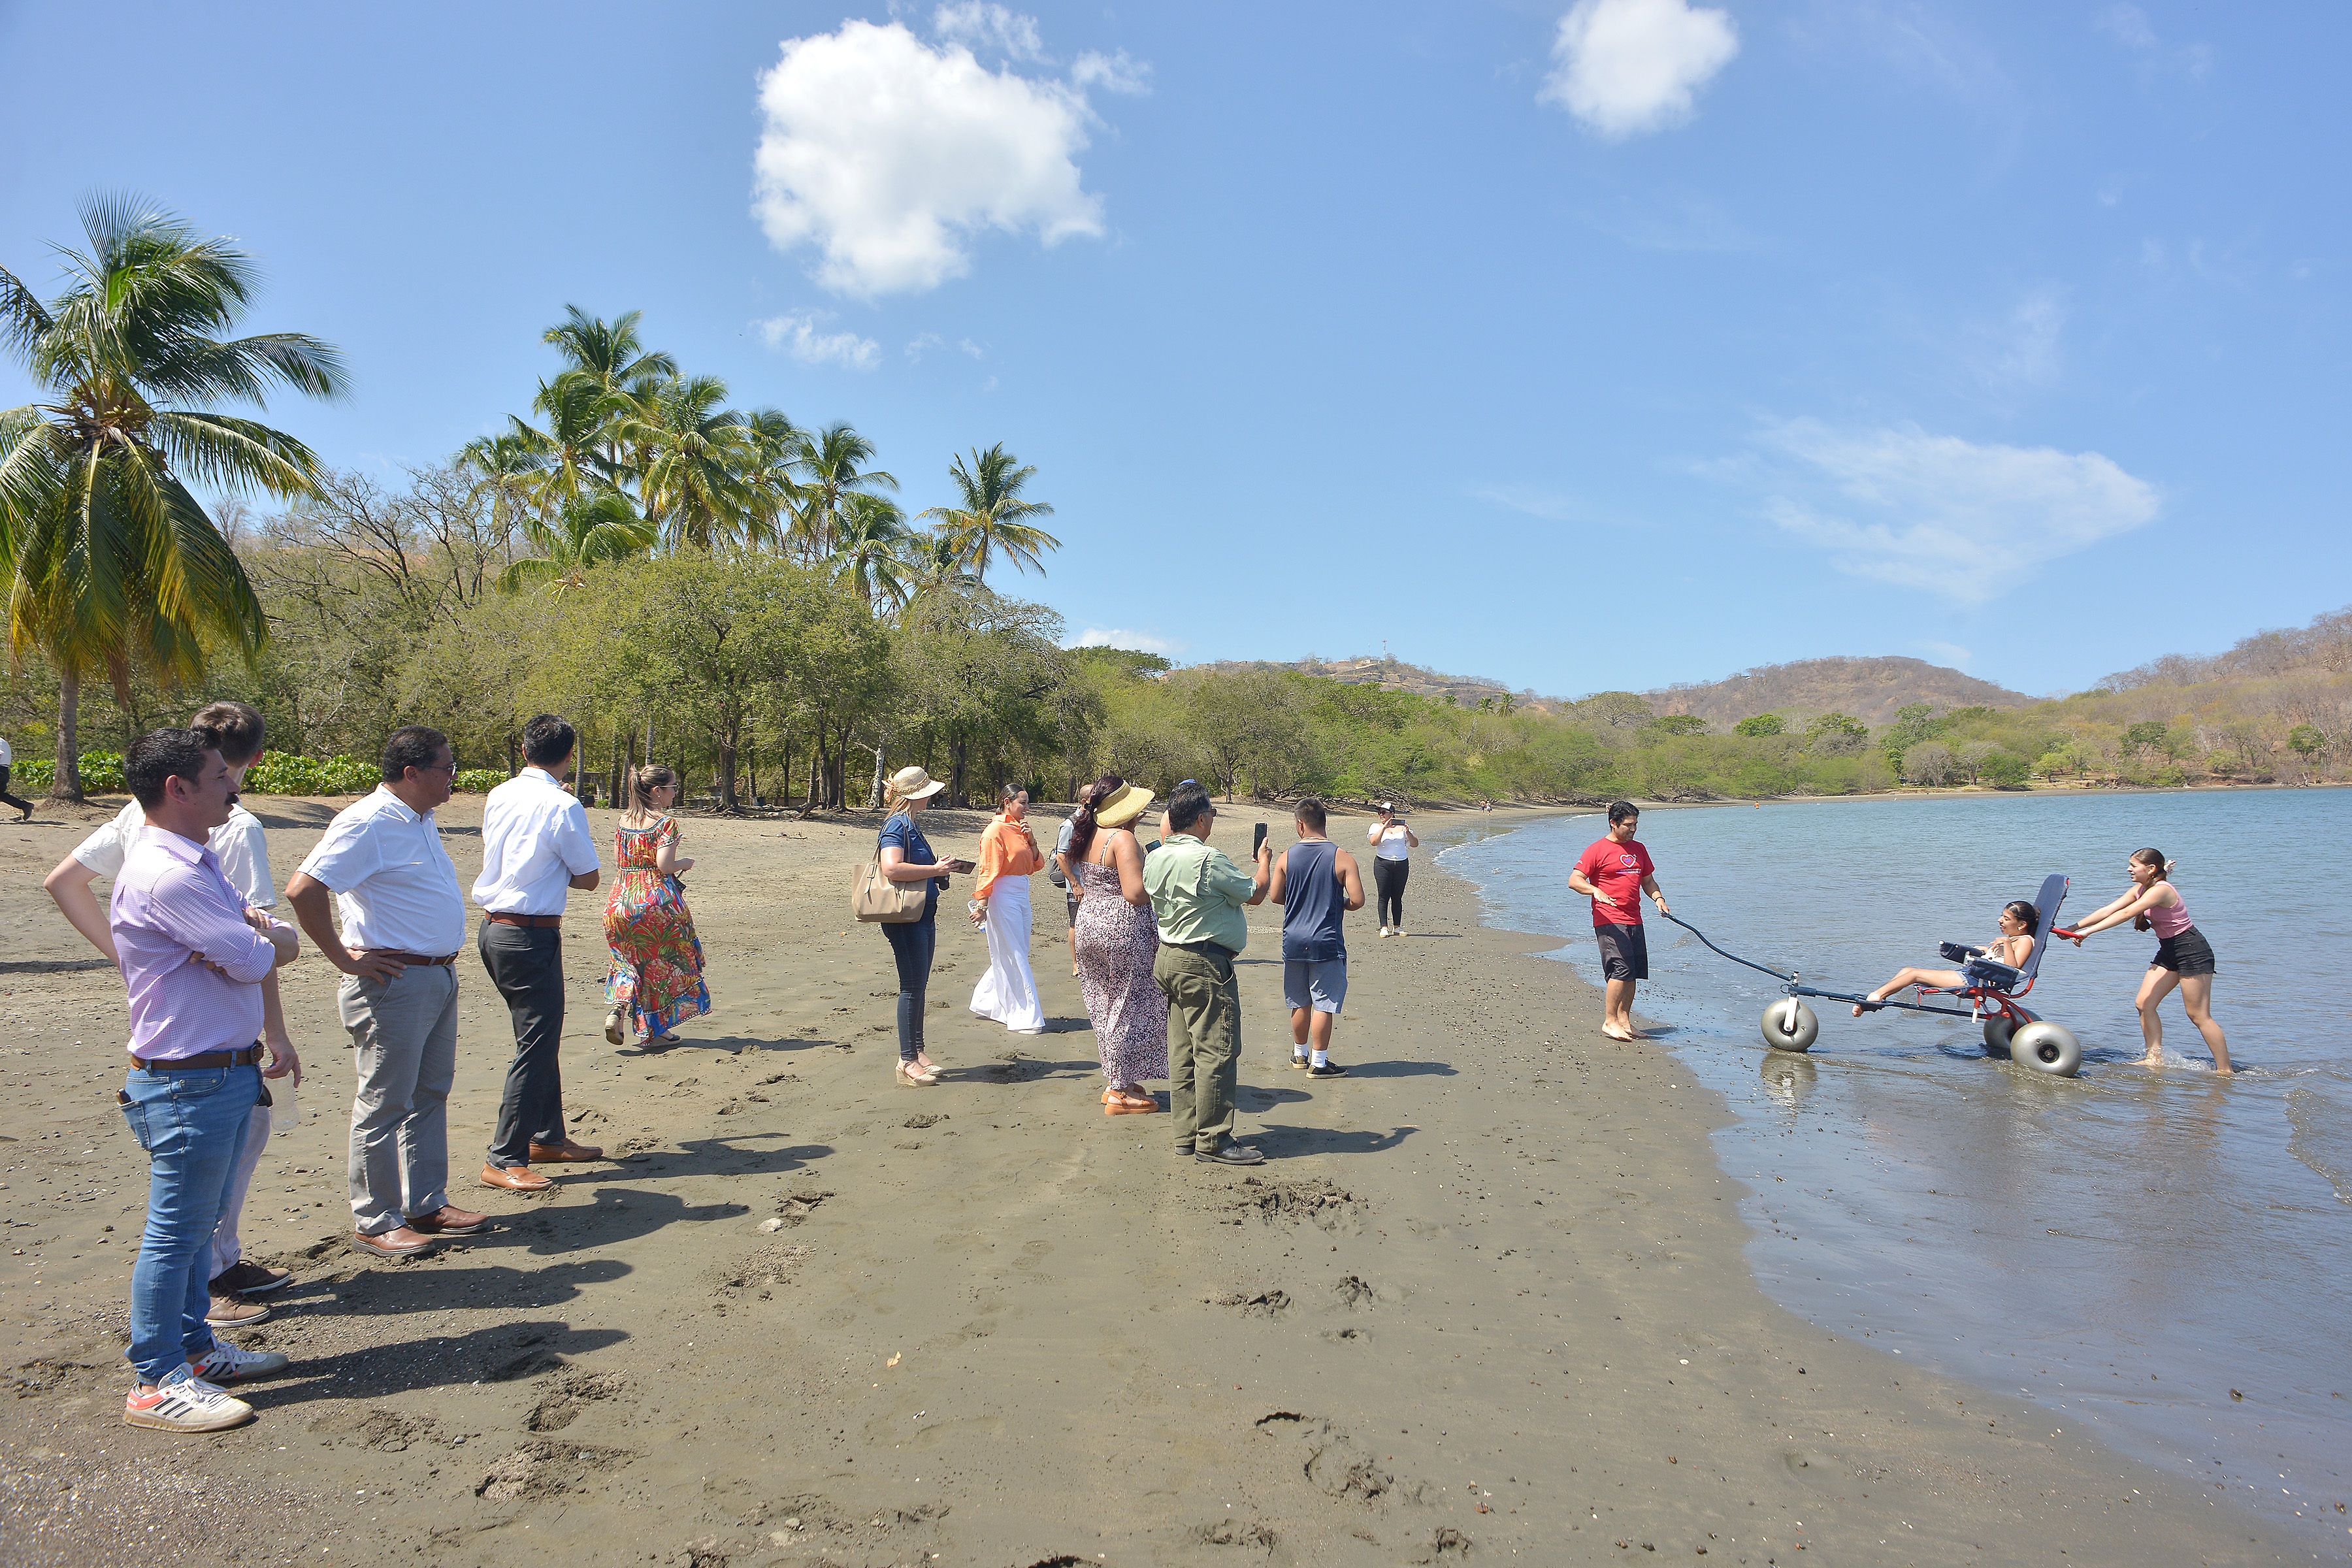 Personas a la orilla de la playa de Costa Rica participando en la inauguración de la playa accesible. Una persona en silla de ruedas está dentro del mar con su cuidador y el equipamento requerido para disfrutar del mar